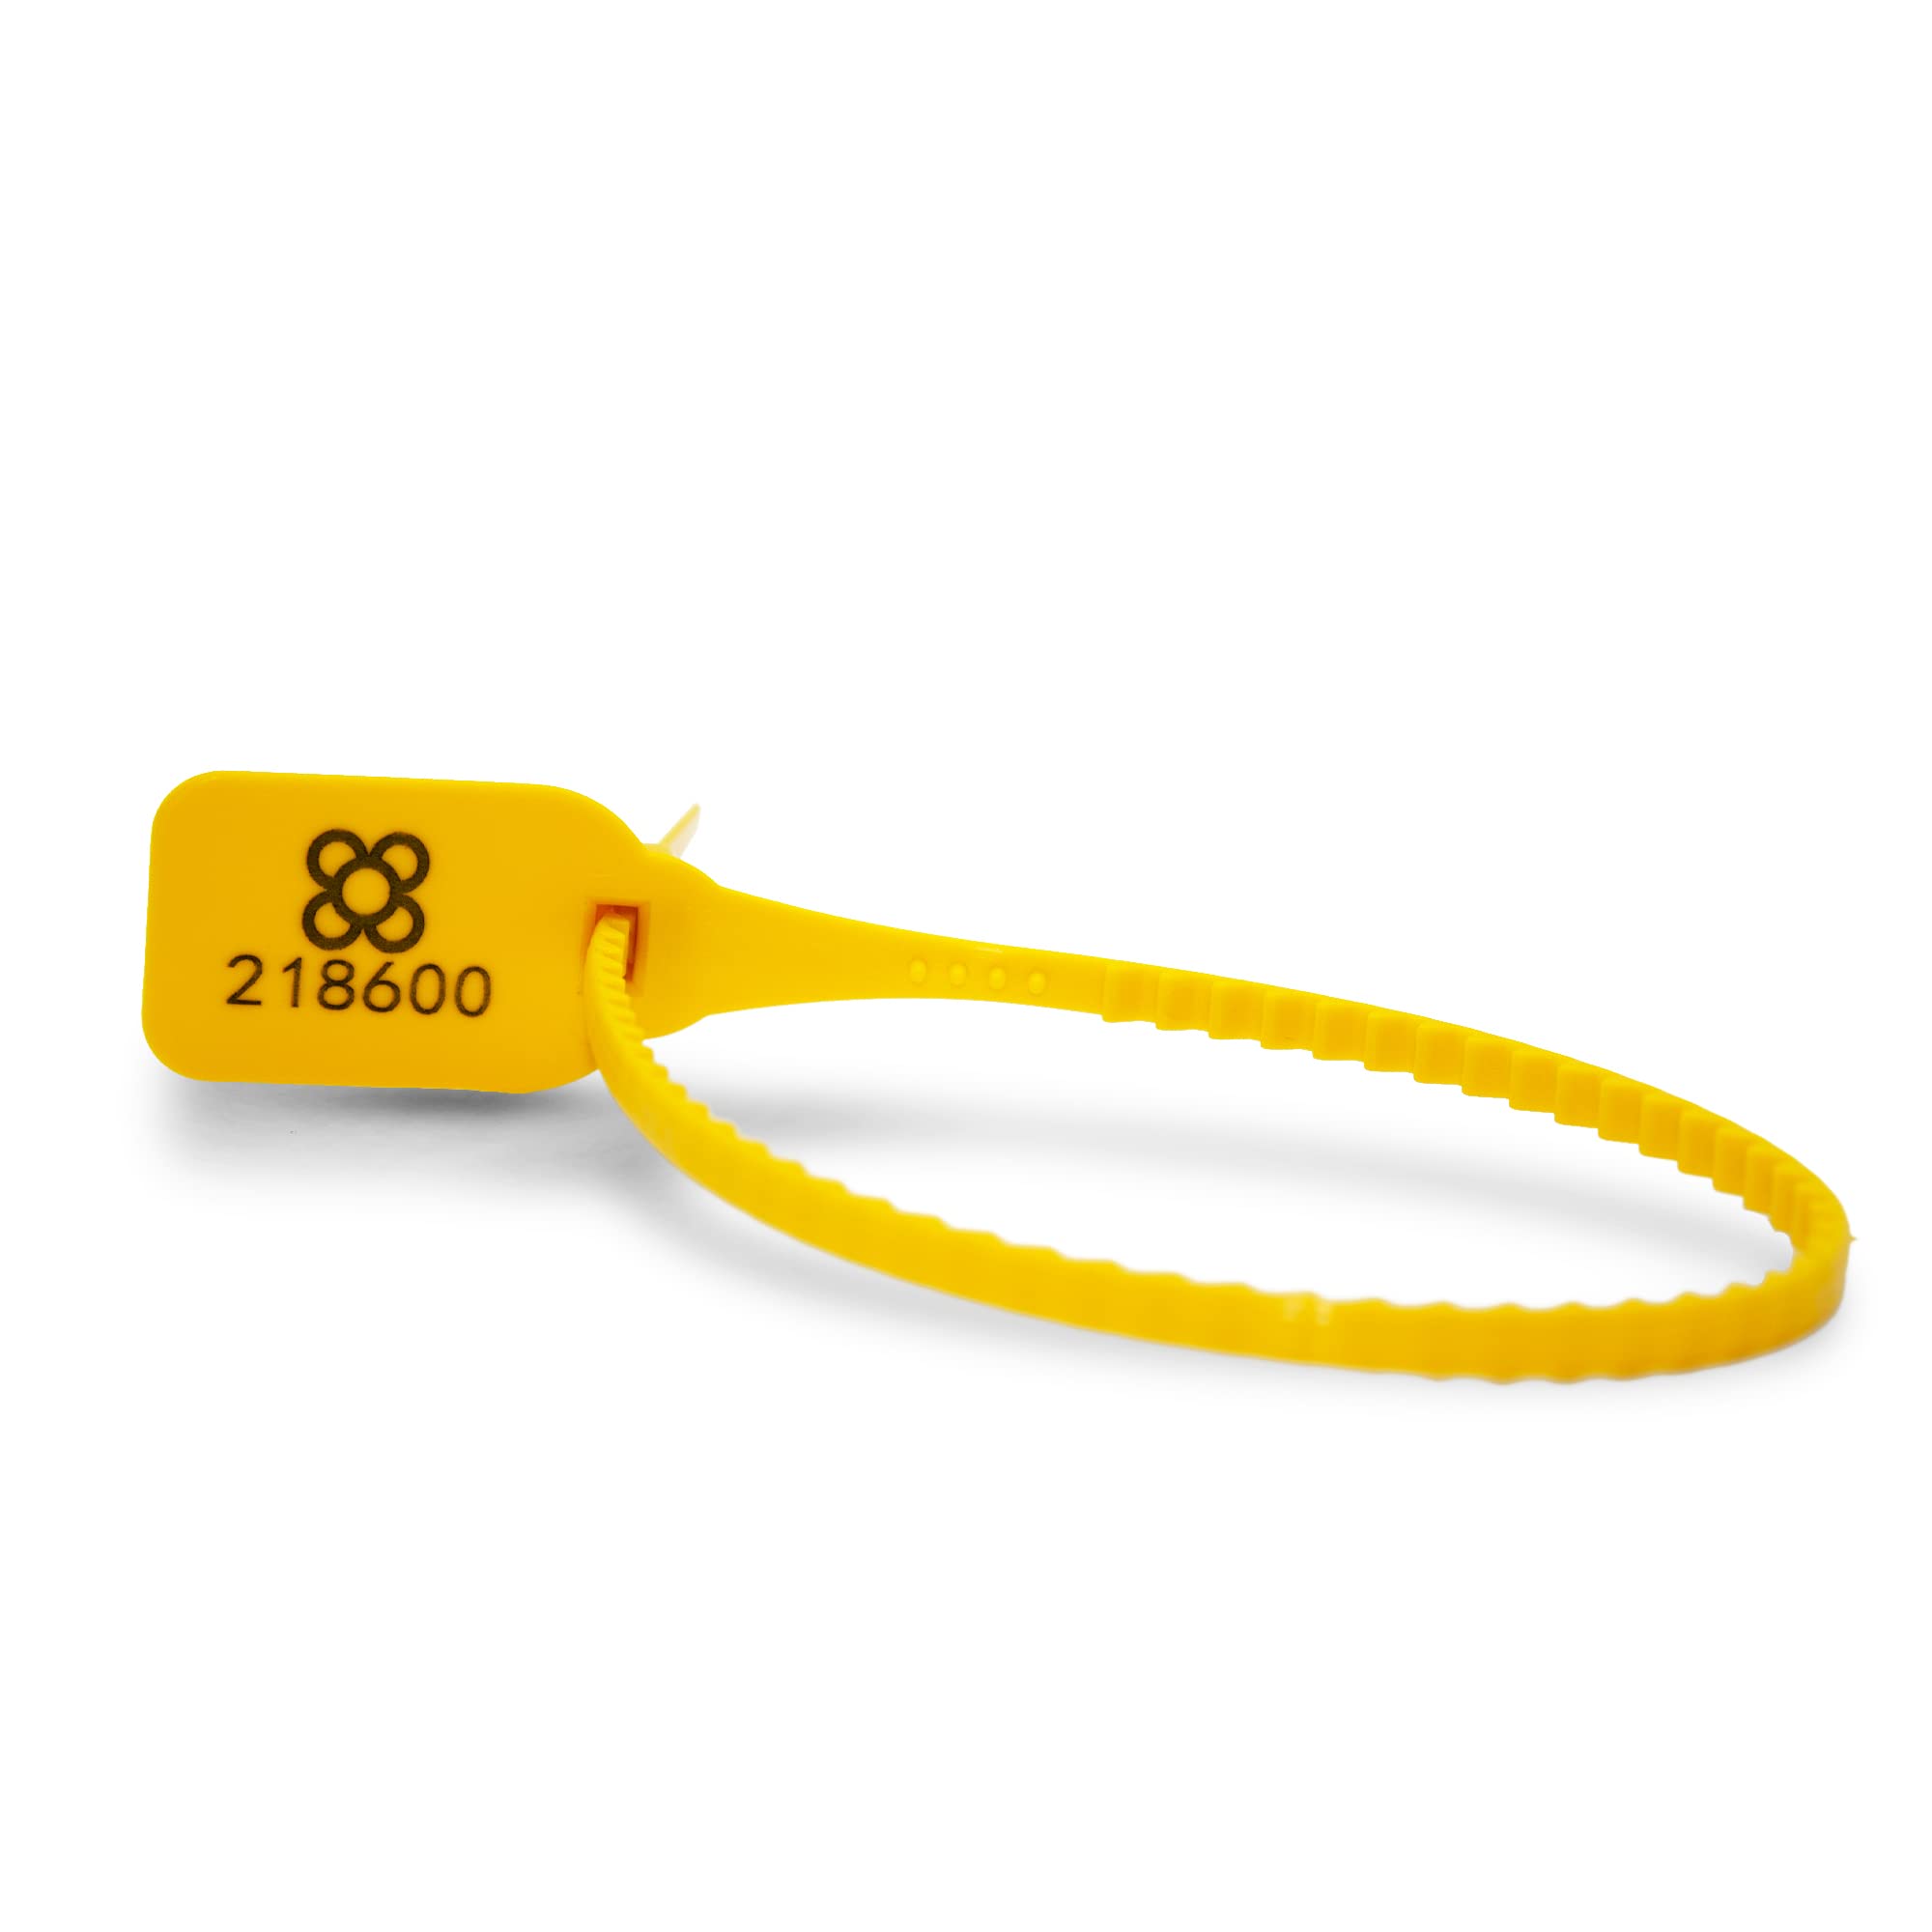 DOJA BARCELONA | Gelb Sicherheitsplomben aus Kunststoff | 200 Einheiten | 36 cm Lang | Plomben kunststoff zum beschriftung, fur koffer, gepäck, beschriftung, unter anderen Verwendungen.